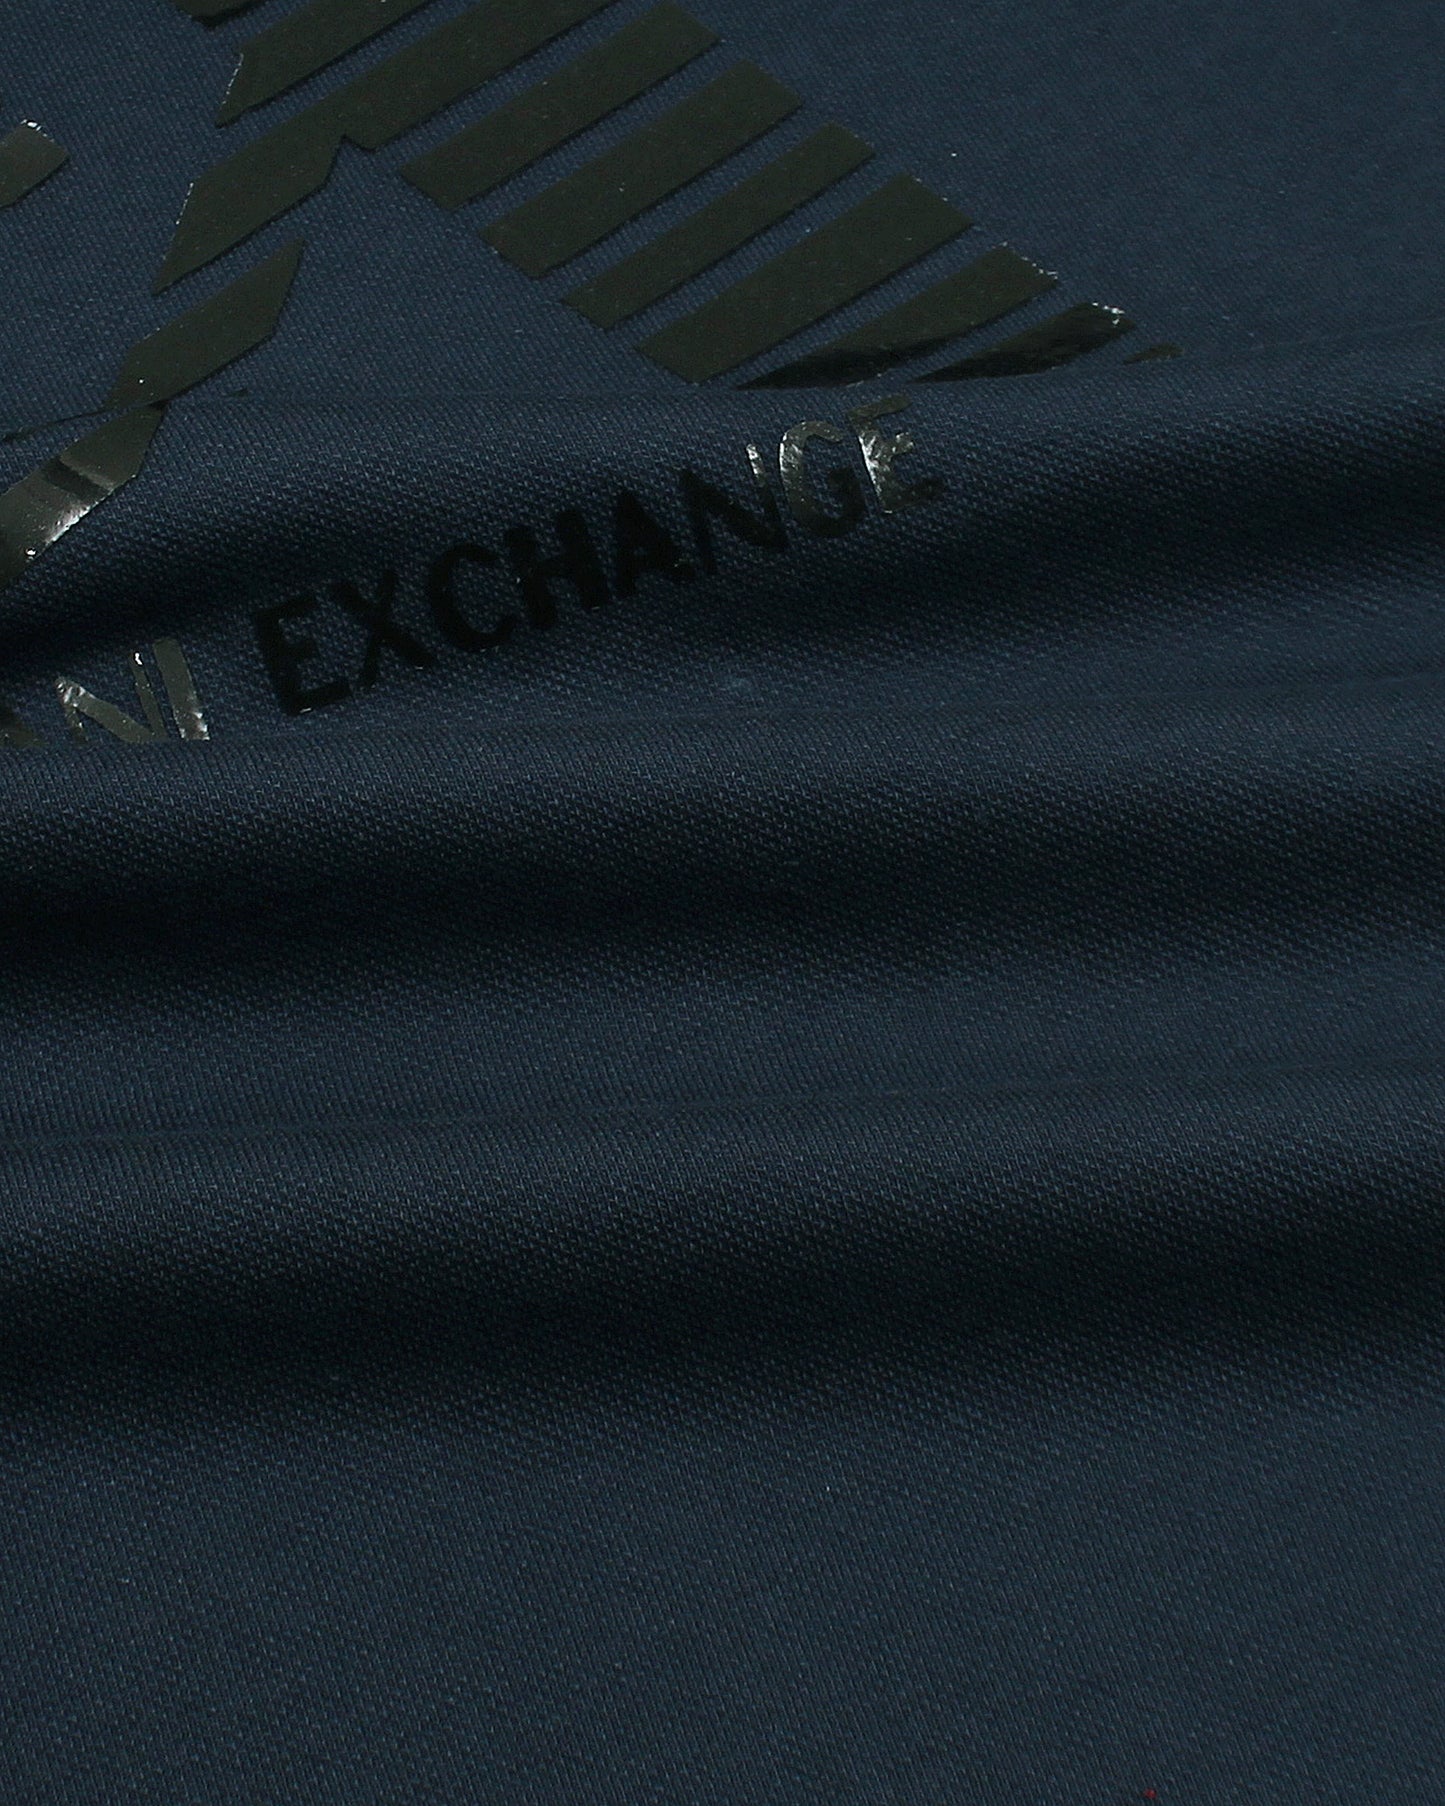 Exclusive A-X Polo Shirt - Navy Blue